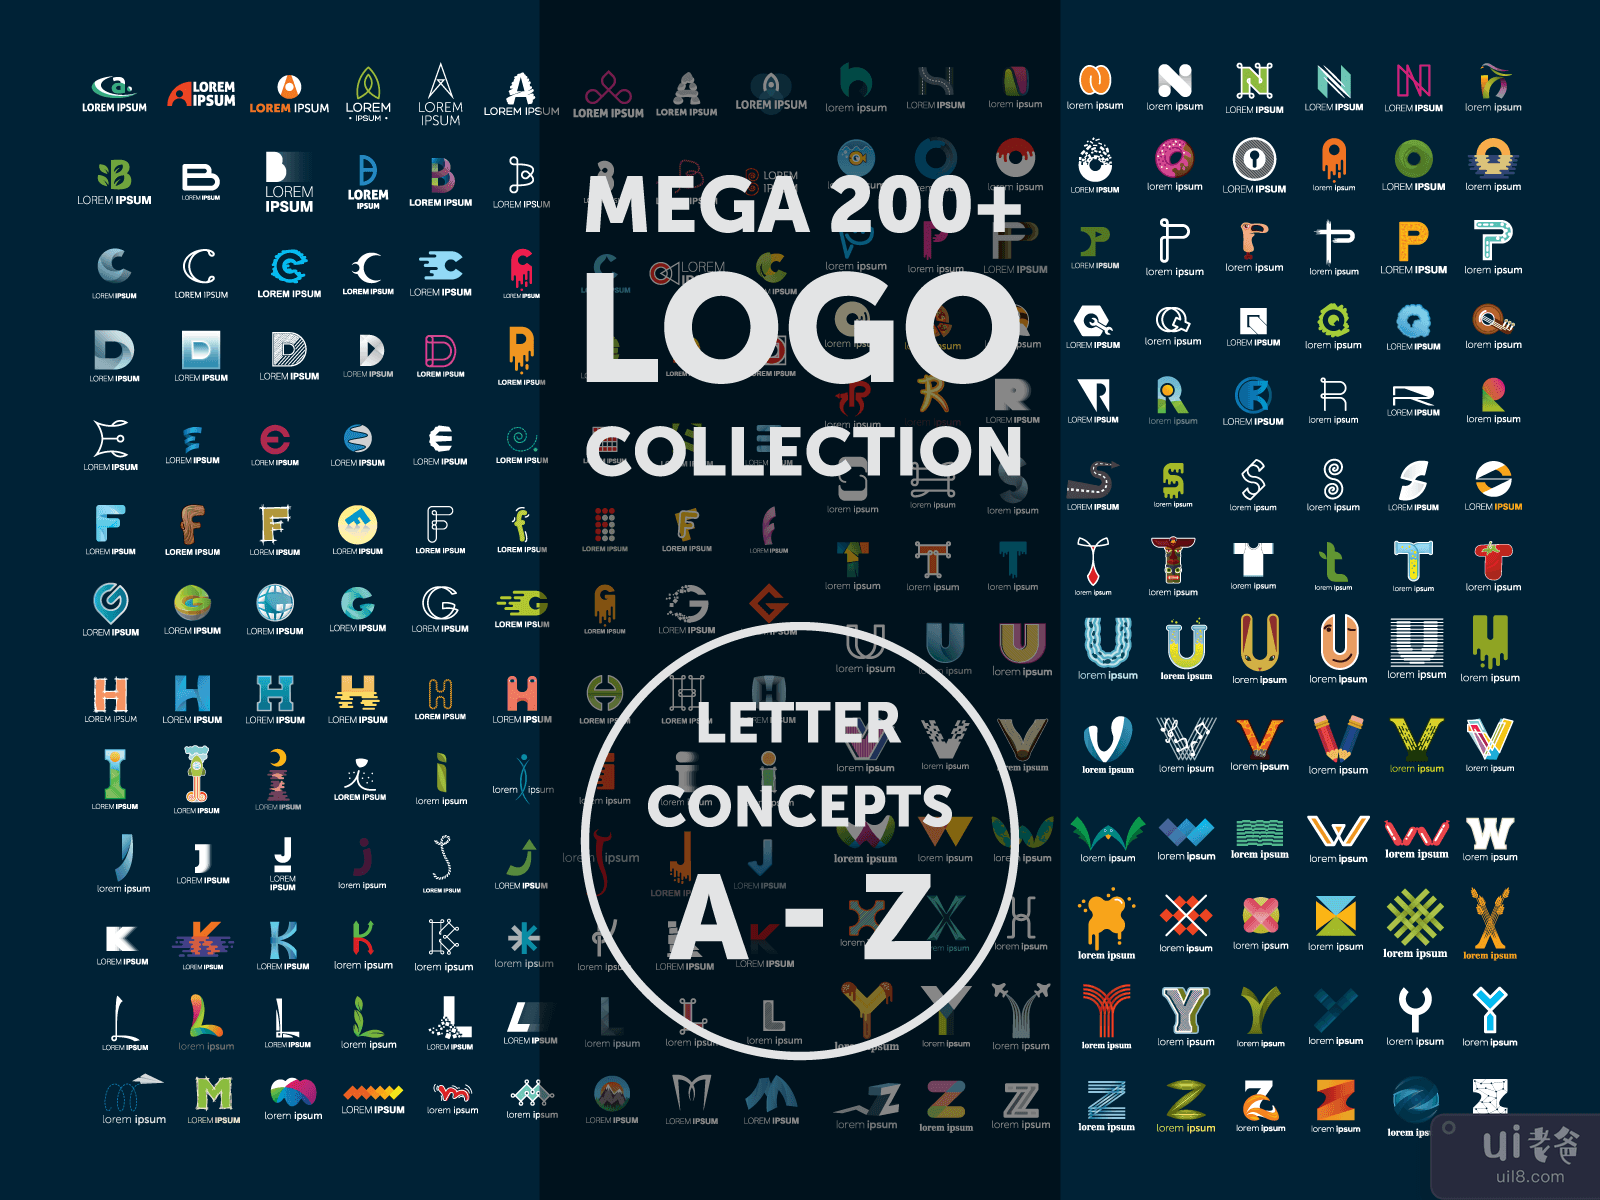 Mega 200+ Logo Collection LATTER CONCEPT A-Z(Mega 200+ Logo Collection LATTER CONCEPT A-Z)插图